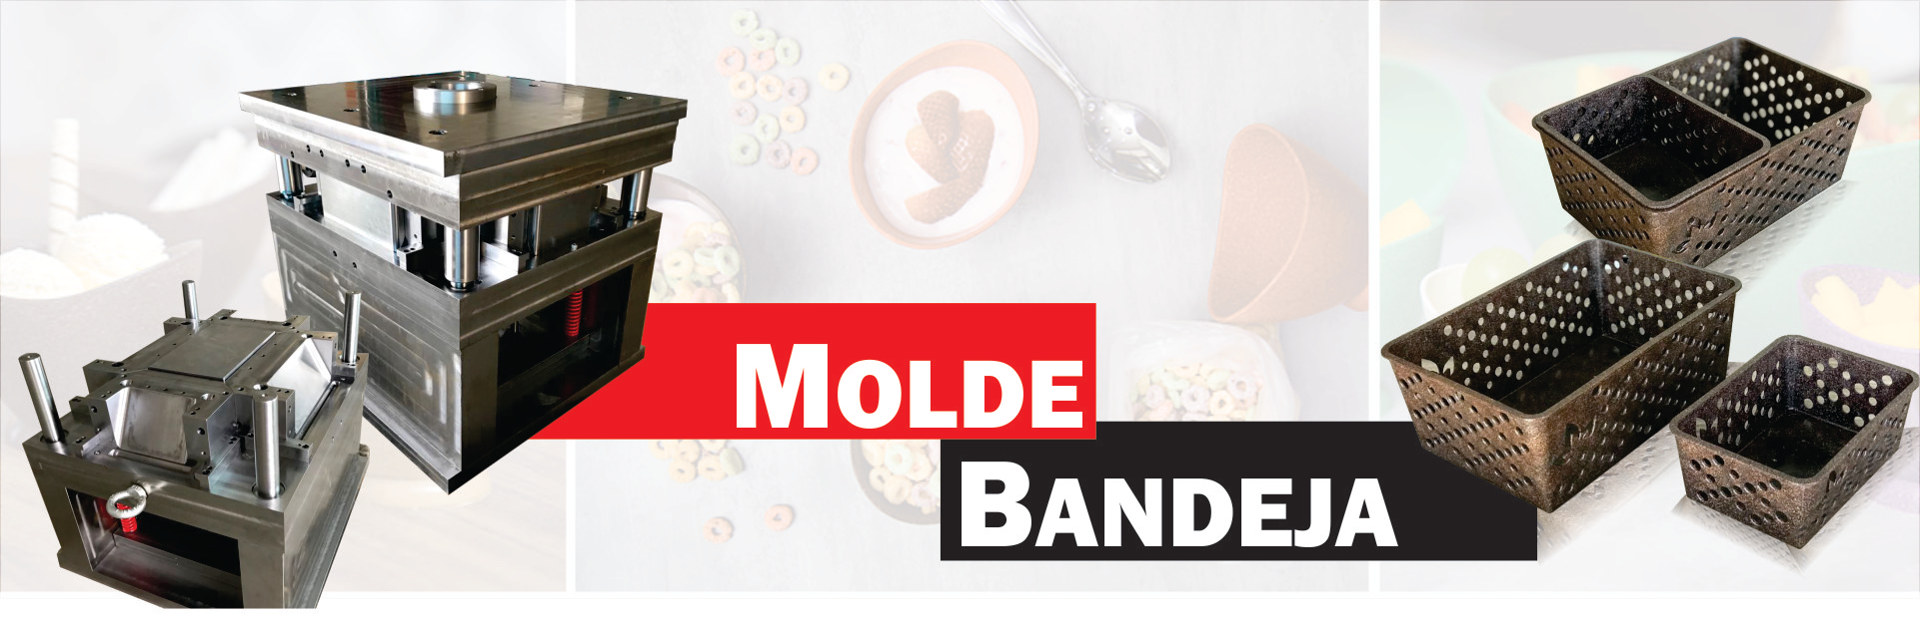 banner-molde-bandeja